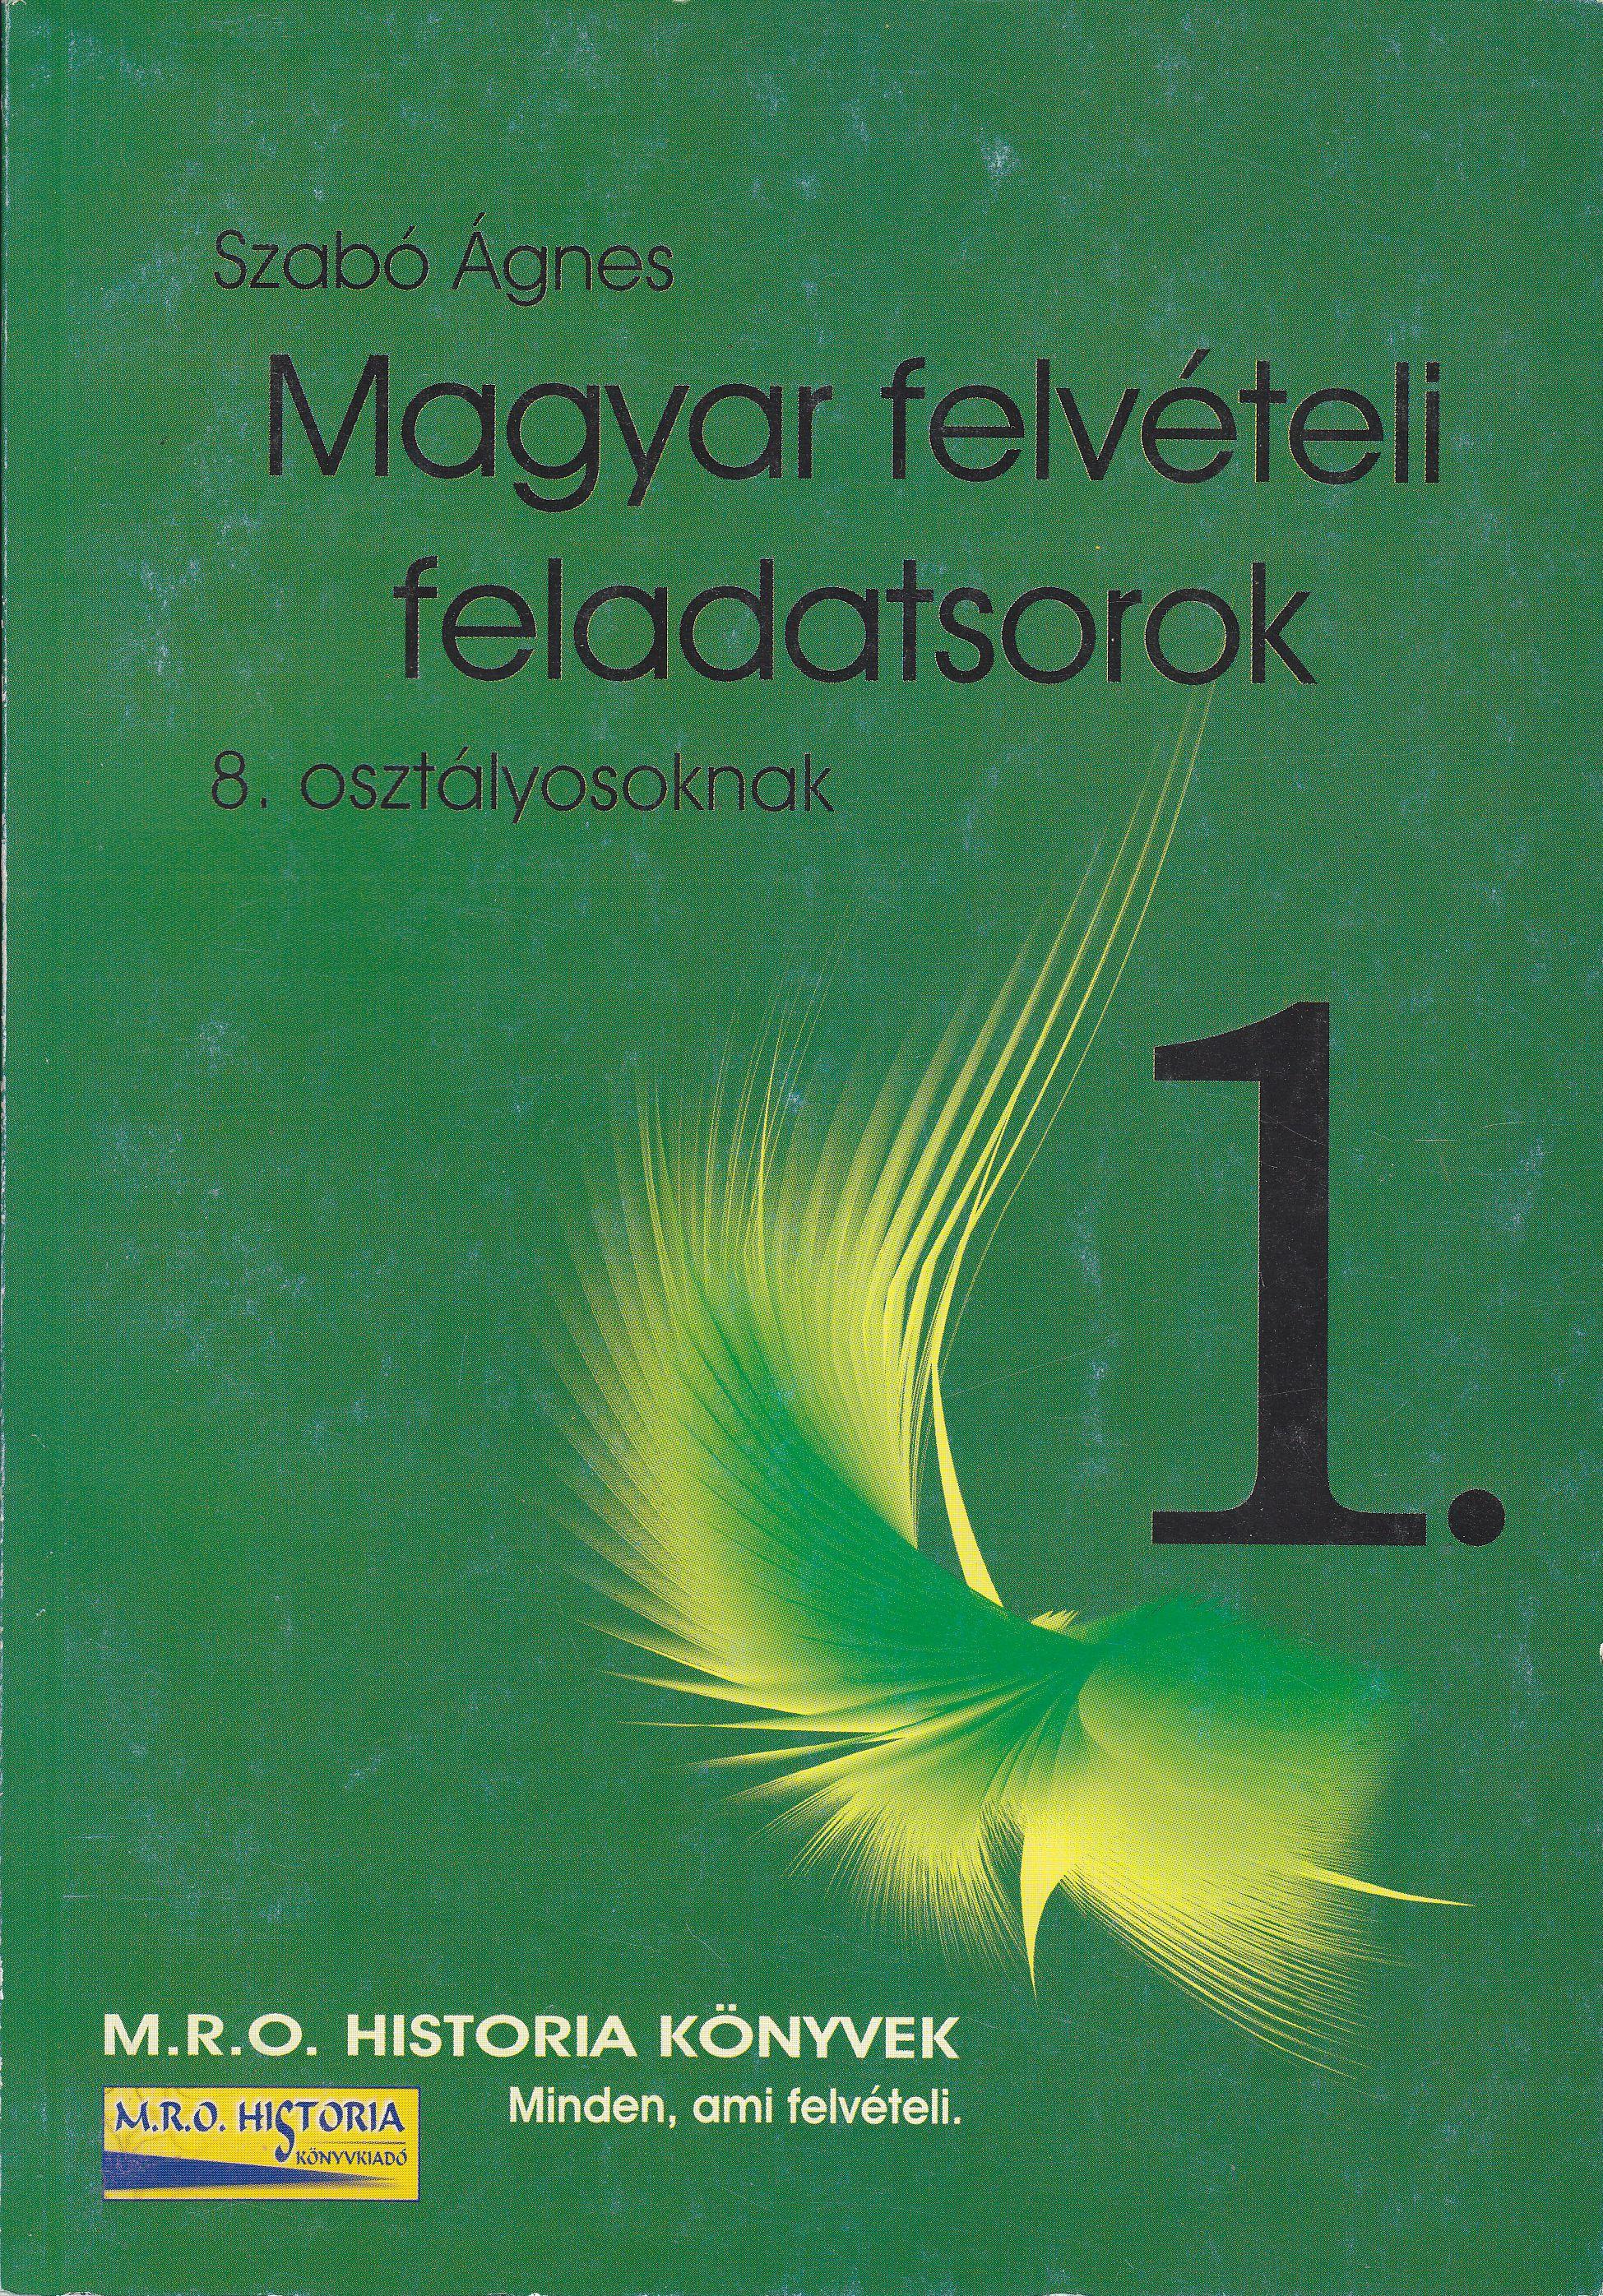 Szabó Ágnes - MAGYAR FELVÉTELI FELADATSOROK 1. (8. OSZTÁLYOSOKNAK)